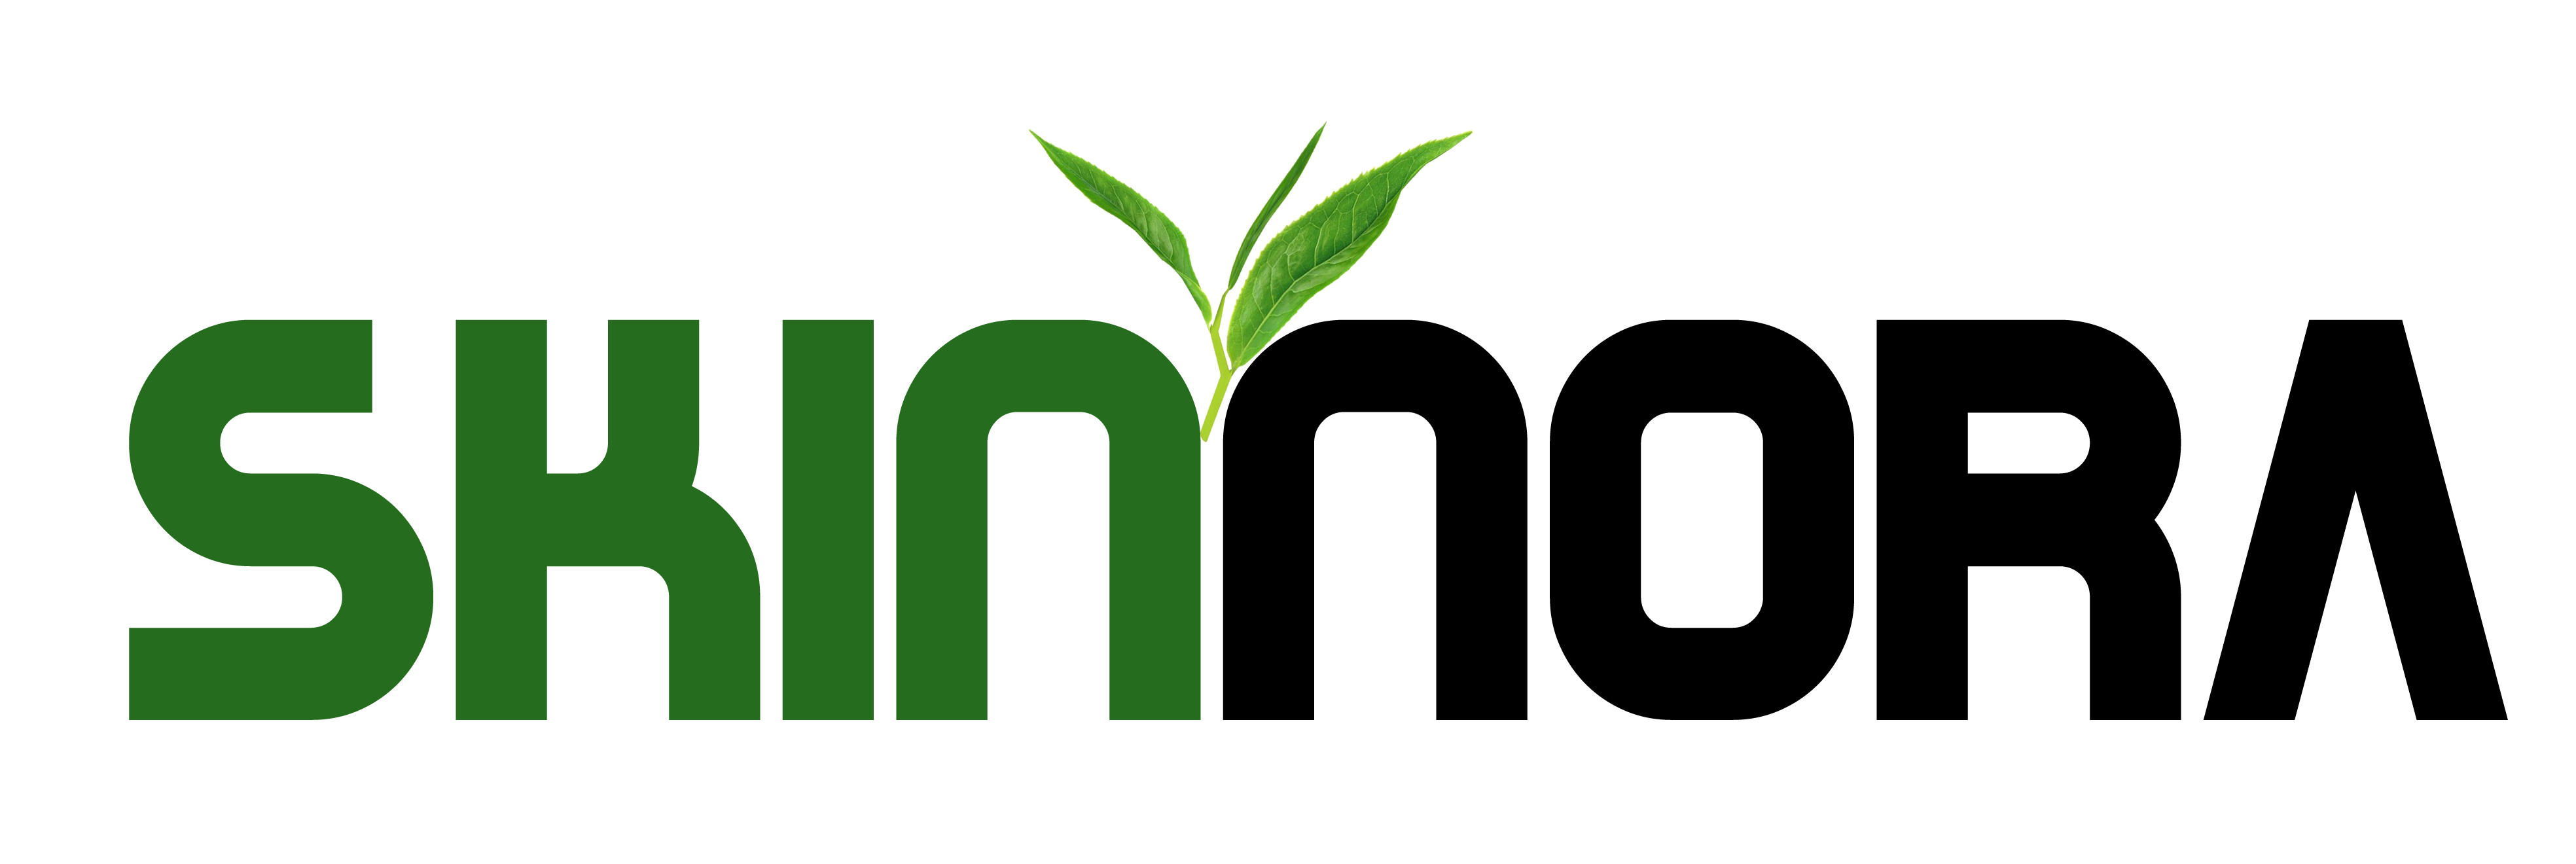 skinnora logo